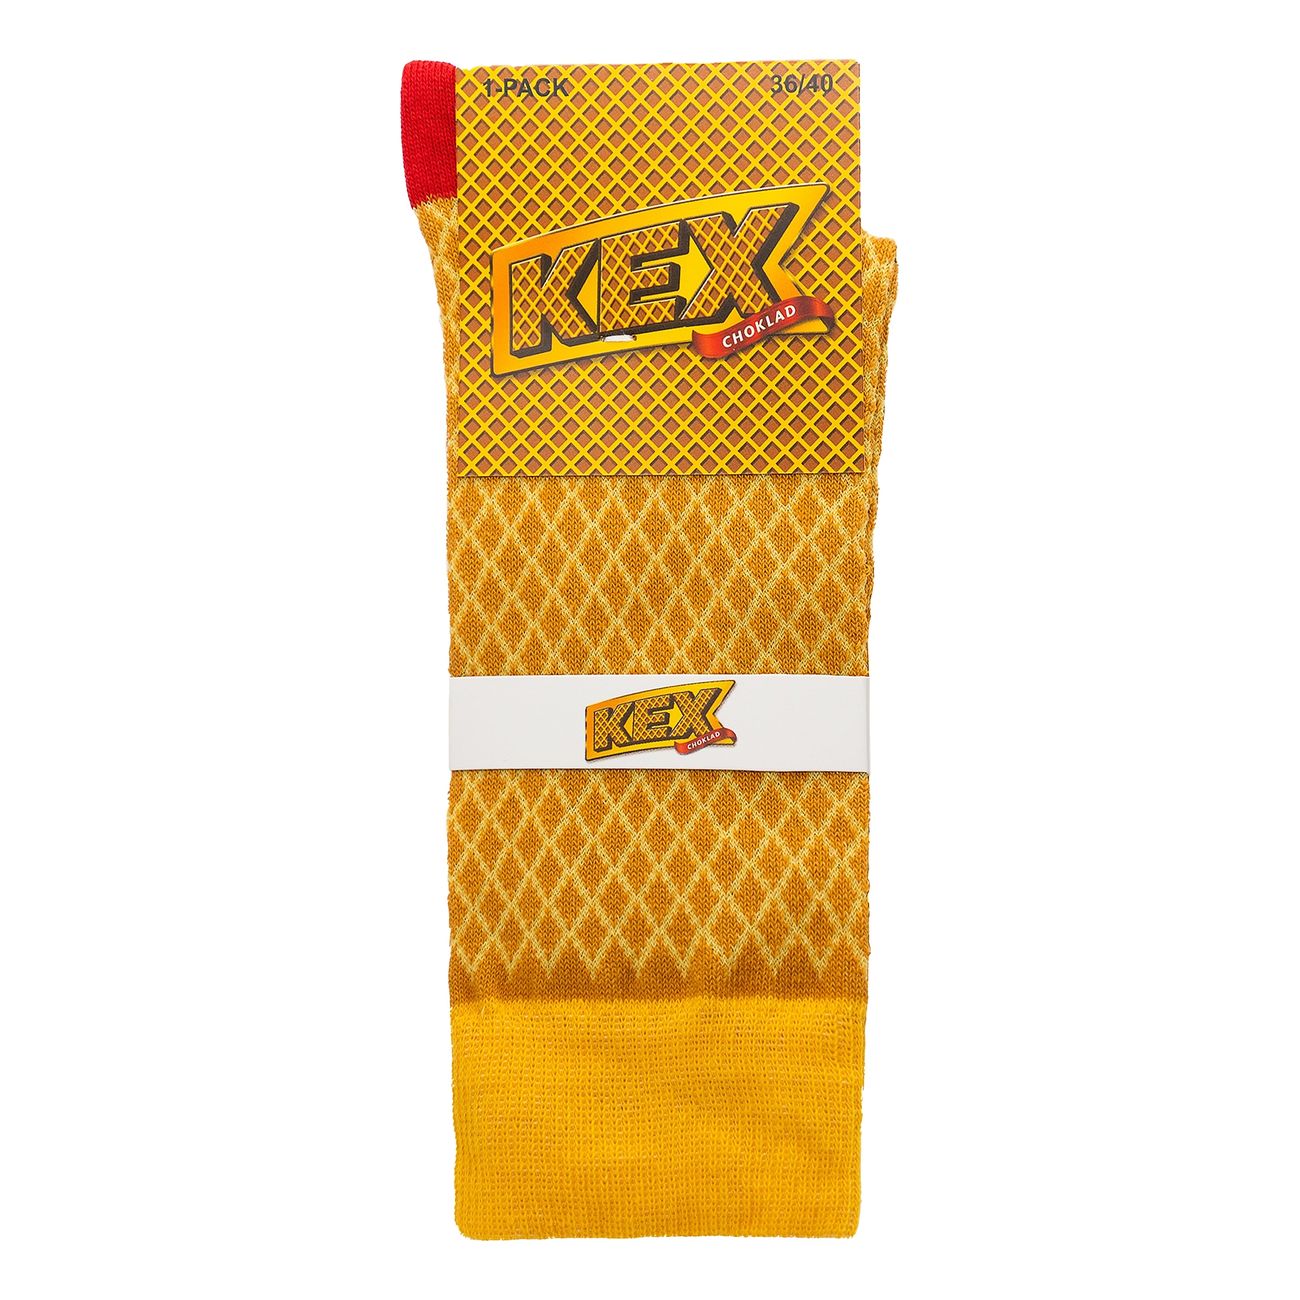 kexchoklad-36-40-91474-2